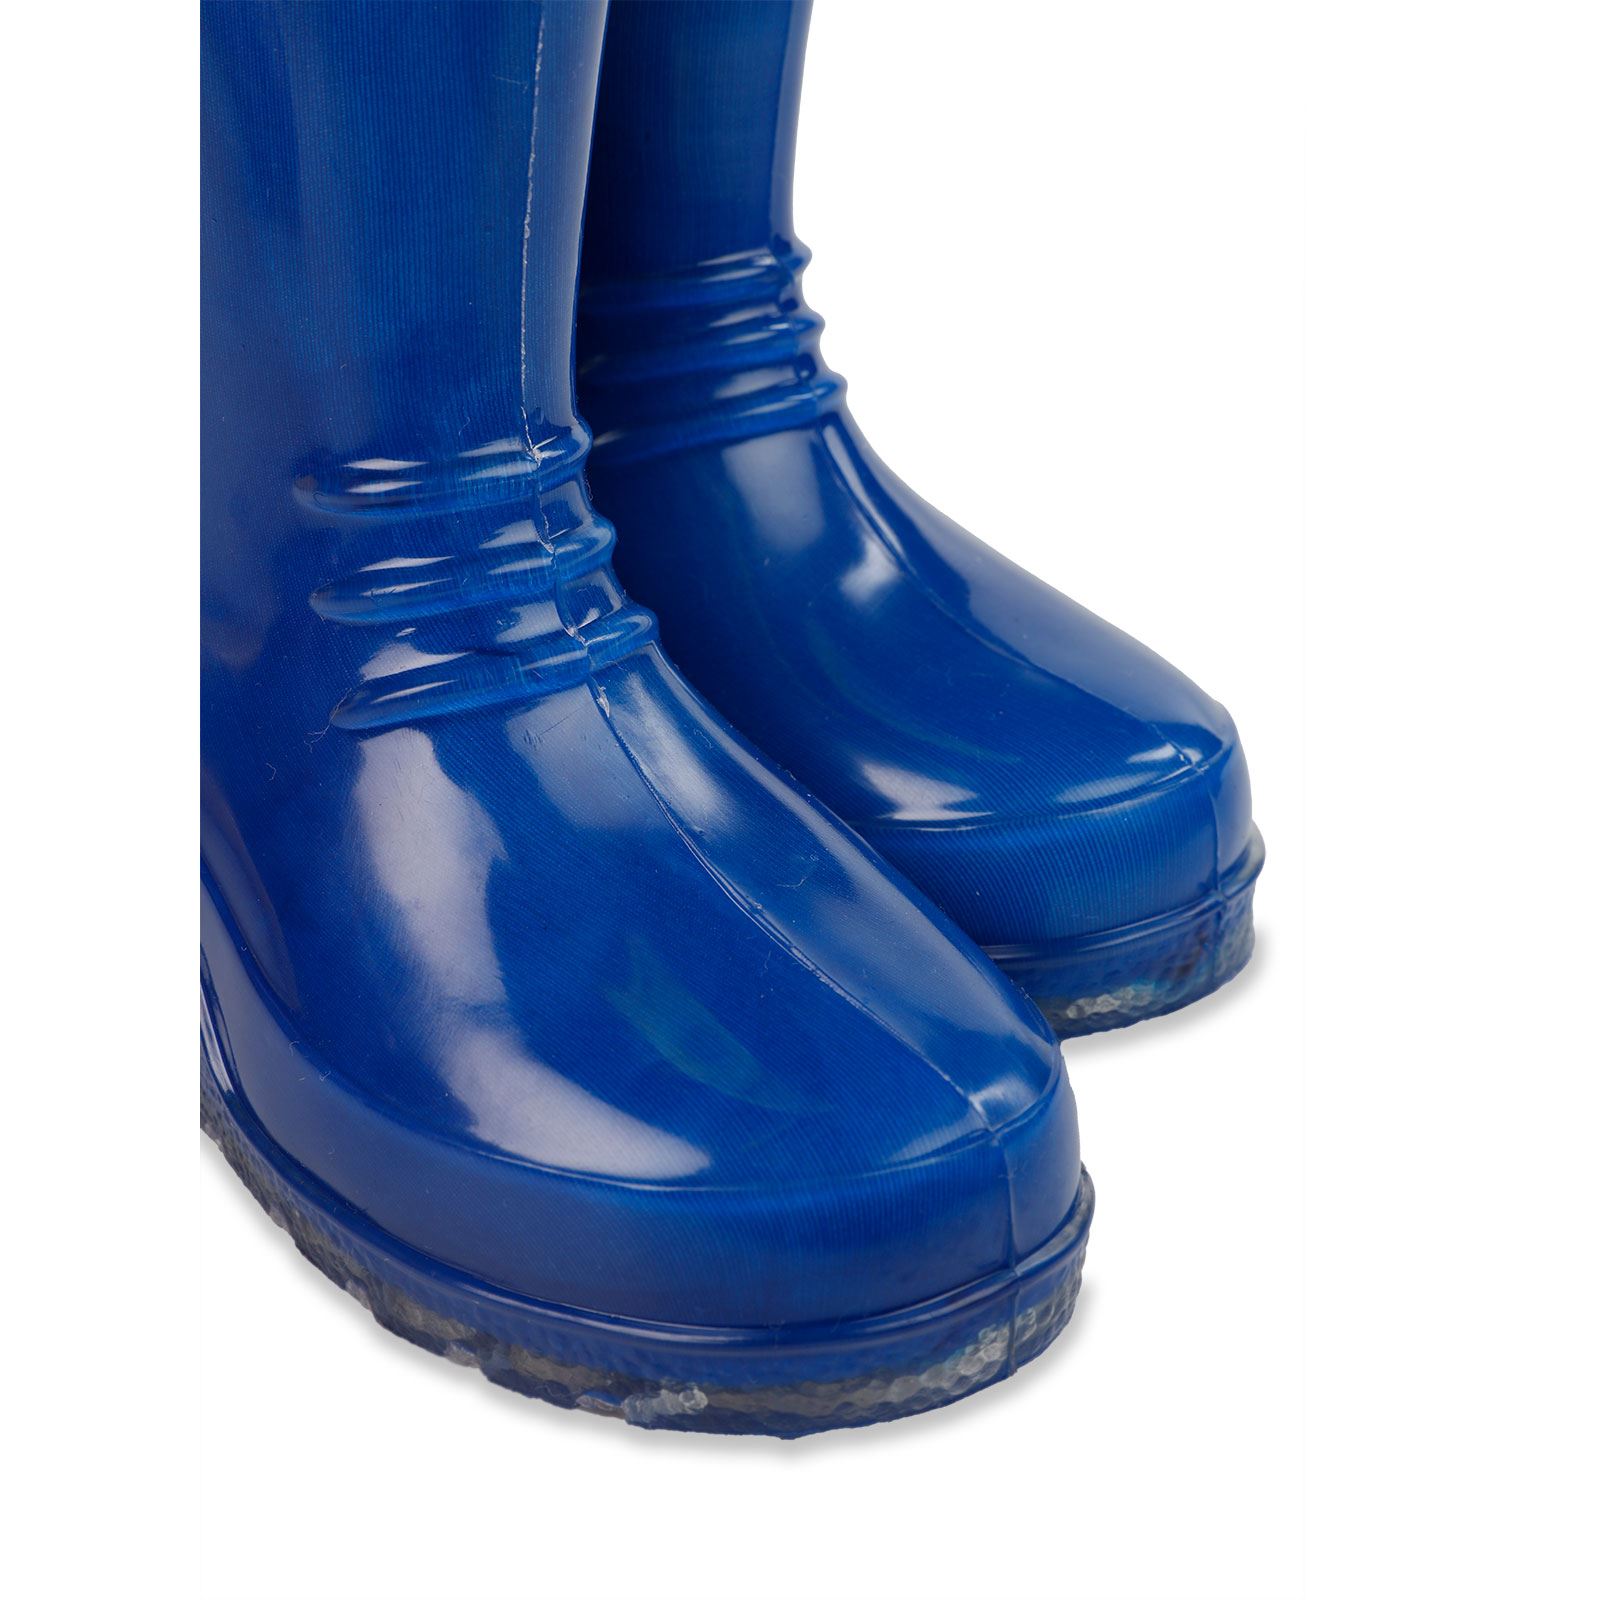 Civil Boots Erkek Çocuk Çizme 24-28 Numara Saks Mavisi